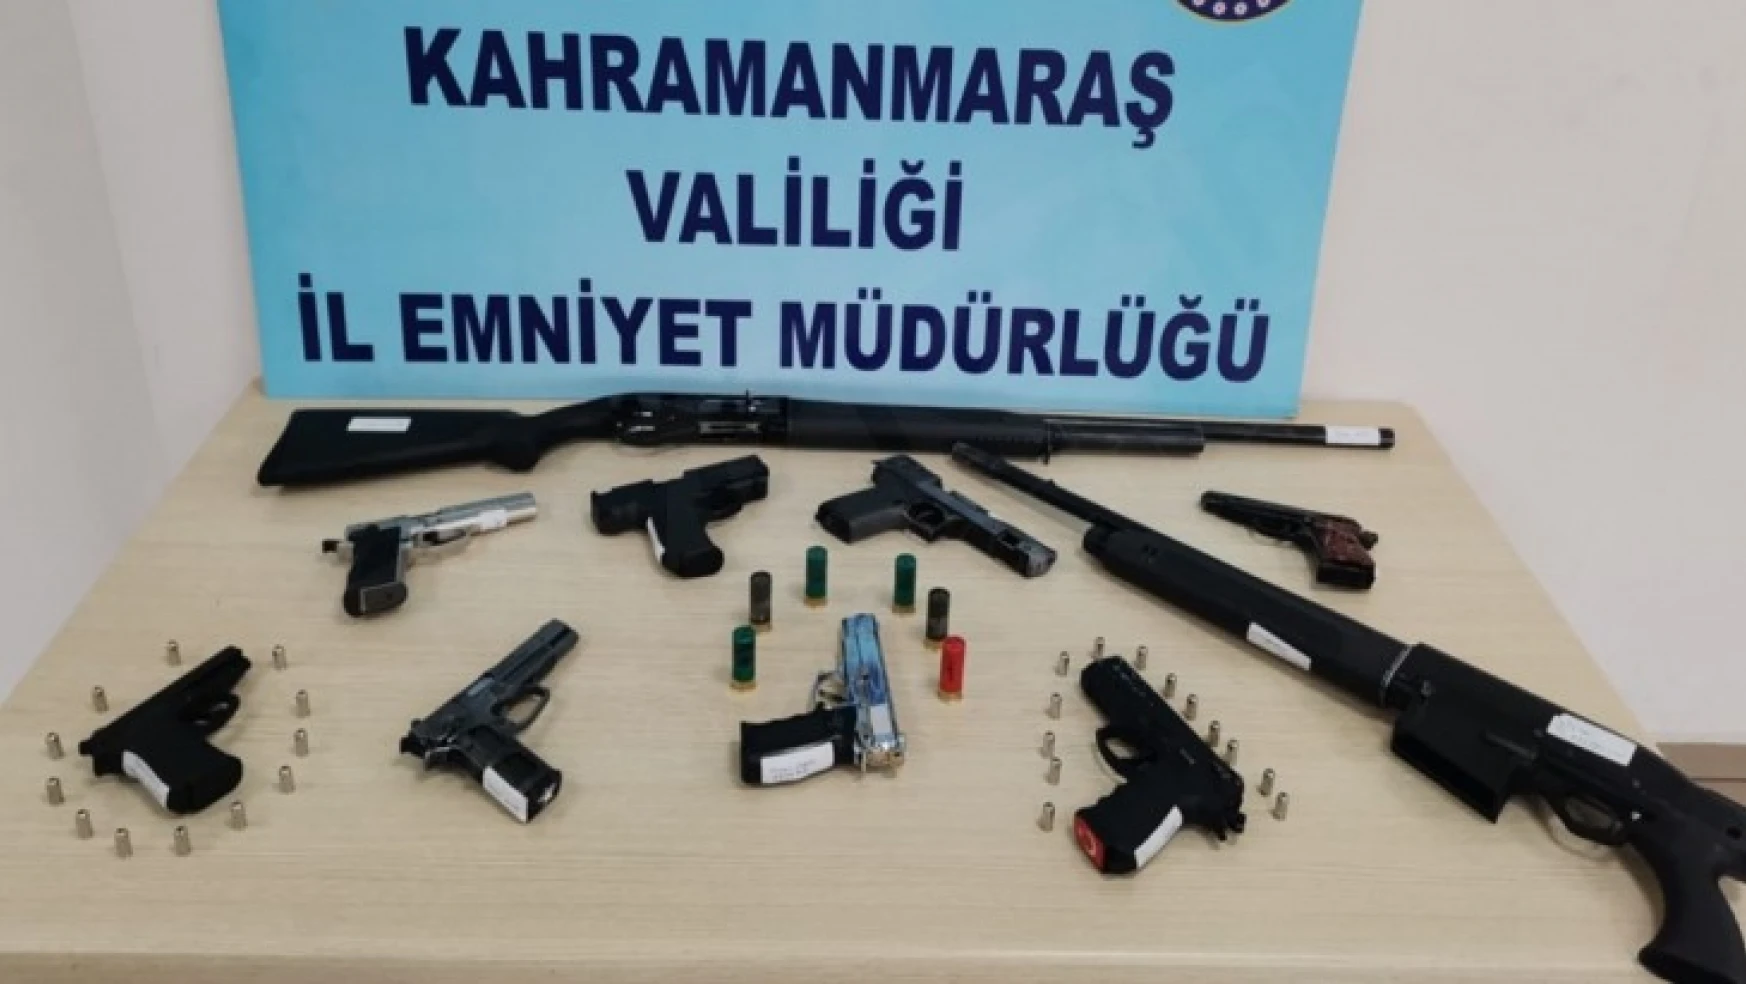 Kahramanmaraş'ta bir haftada 9 silah ele geçirildi